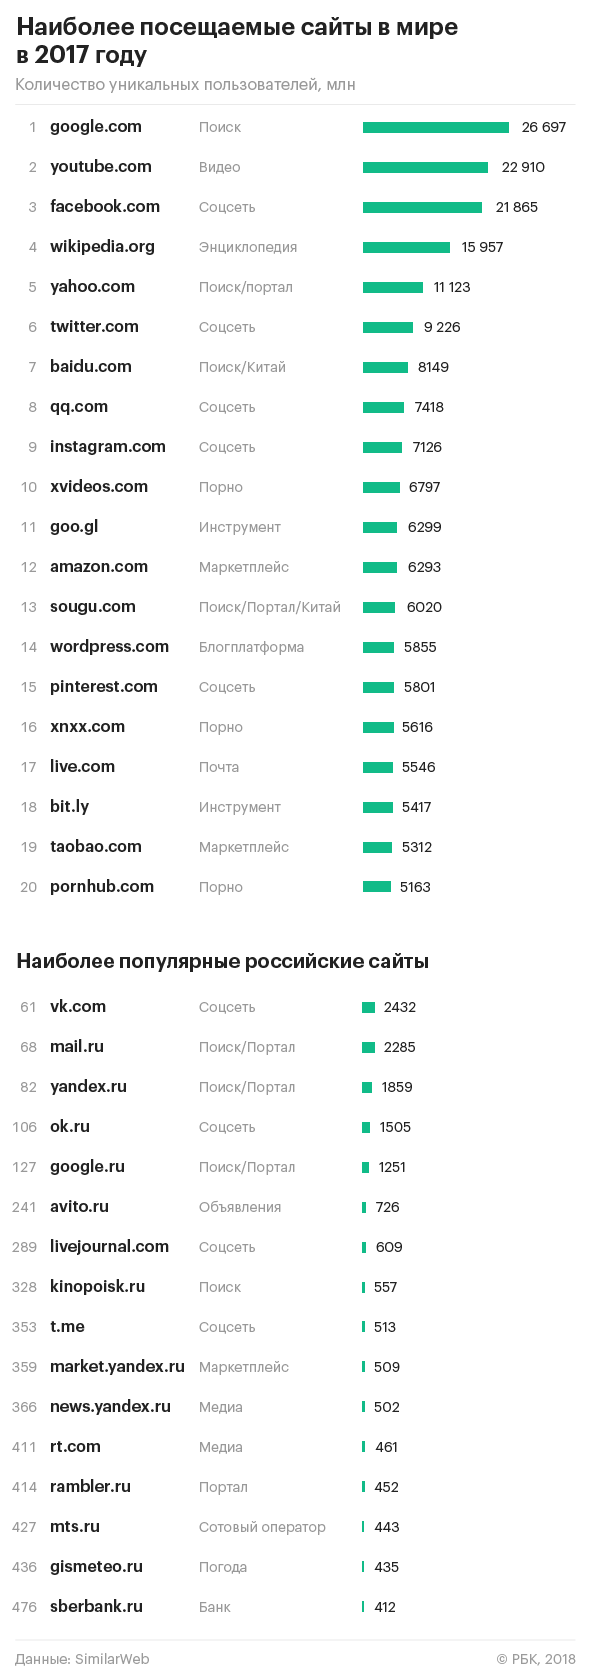 Самые посещаемые сайты в интернете тор браузер 2014 даркнет